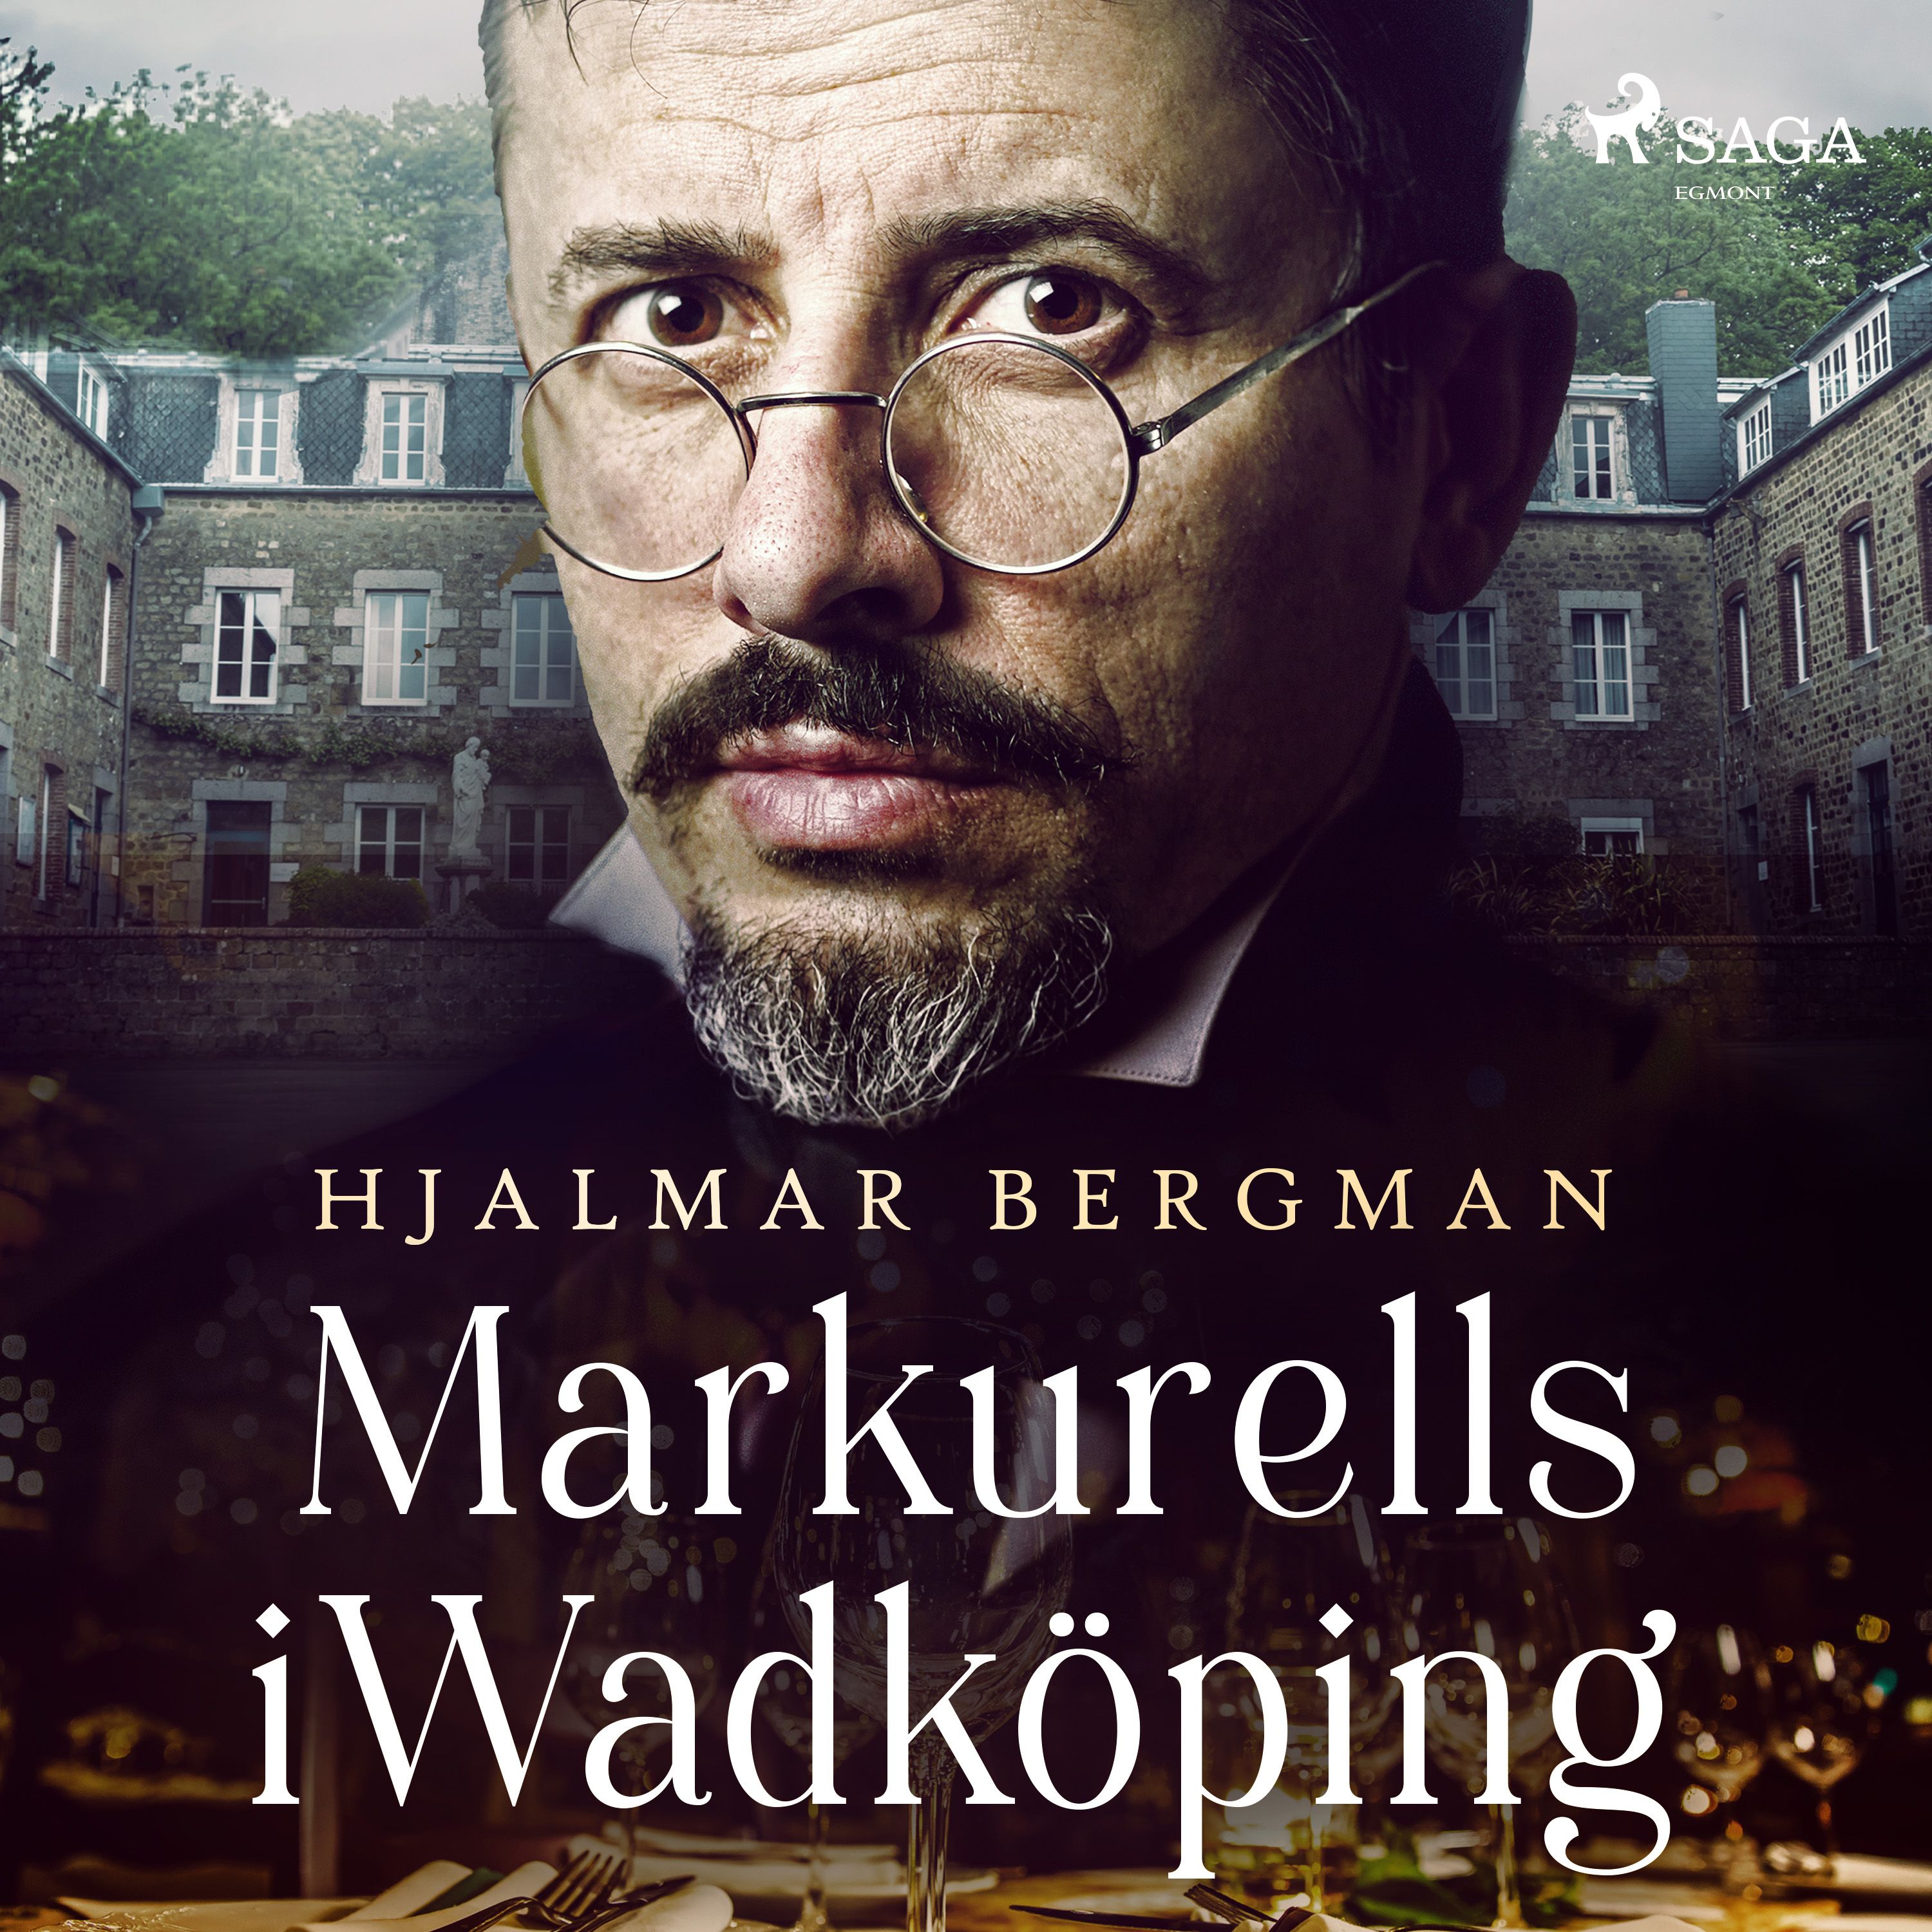 Markurells i Wadköping, ljudbok av Hjalmar  Bergman